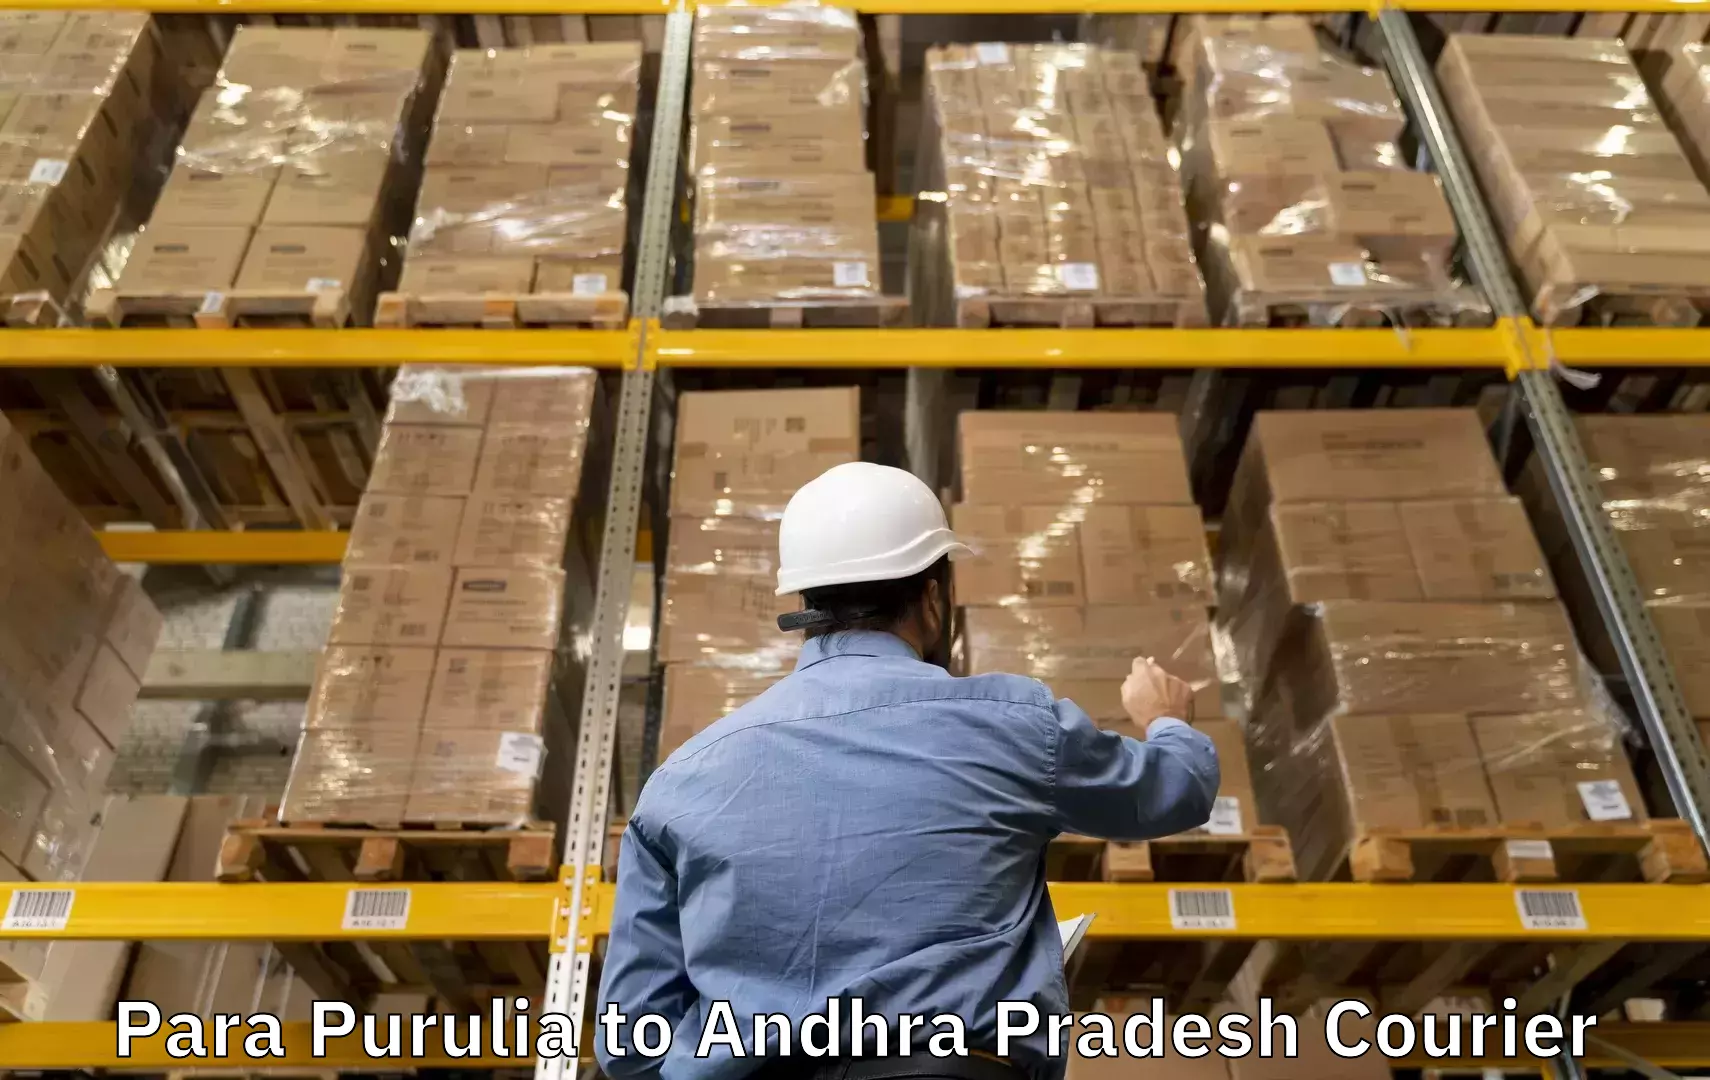 Baggage shipping service Para Purulia to Tenali